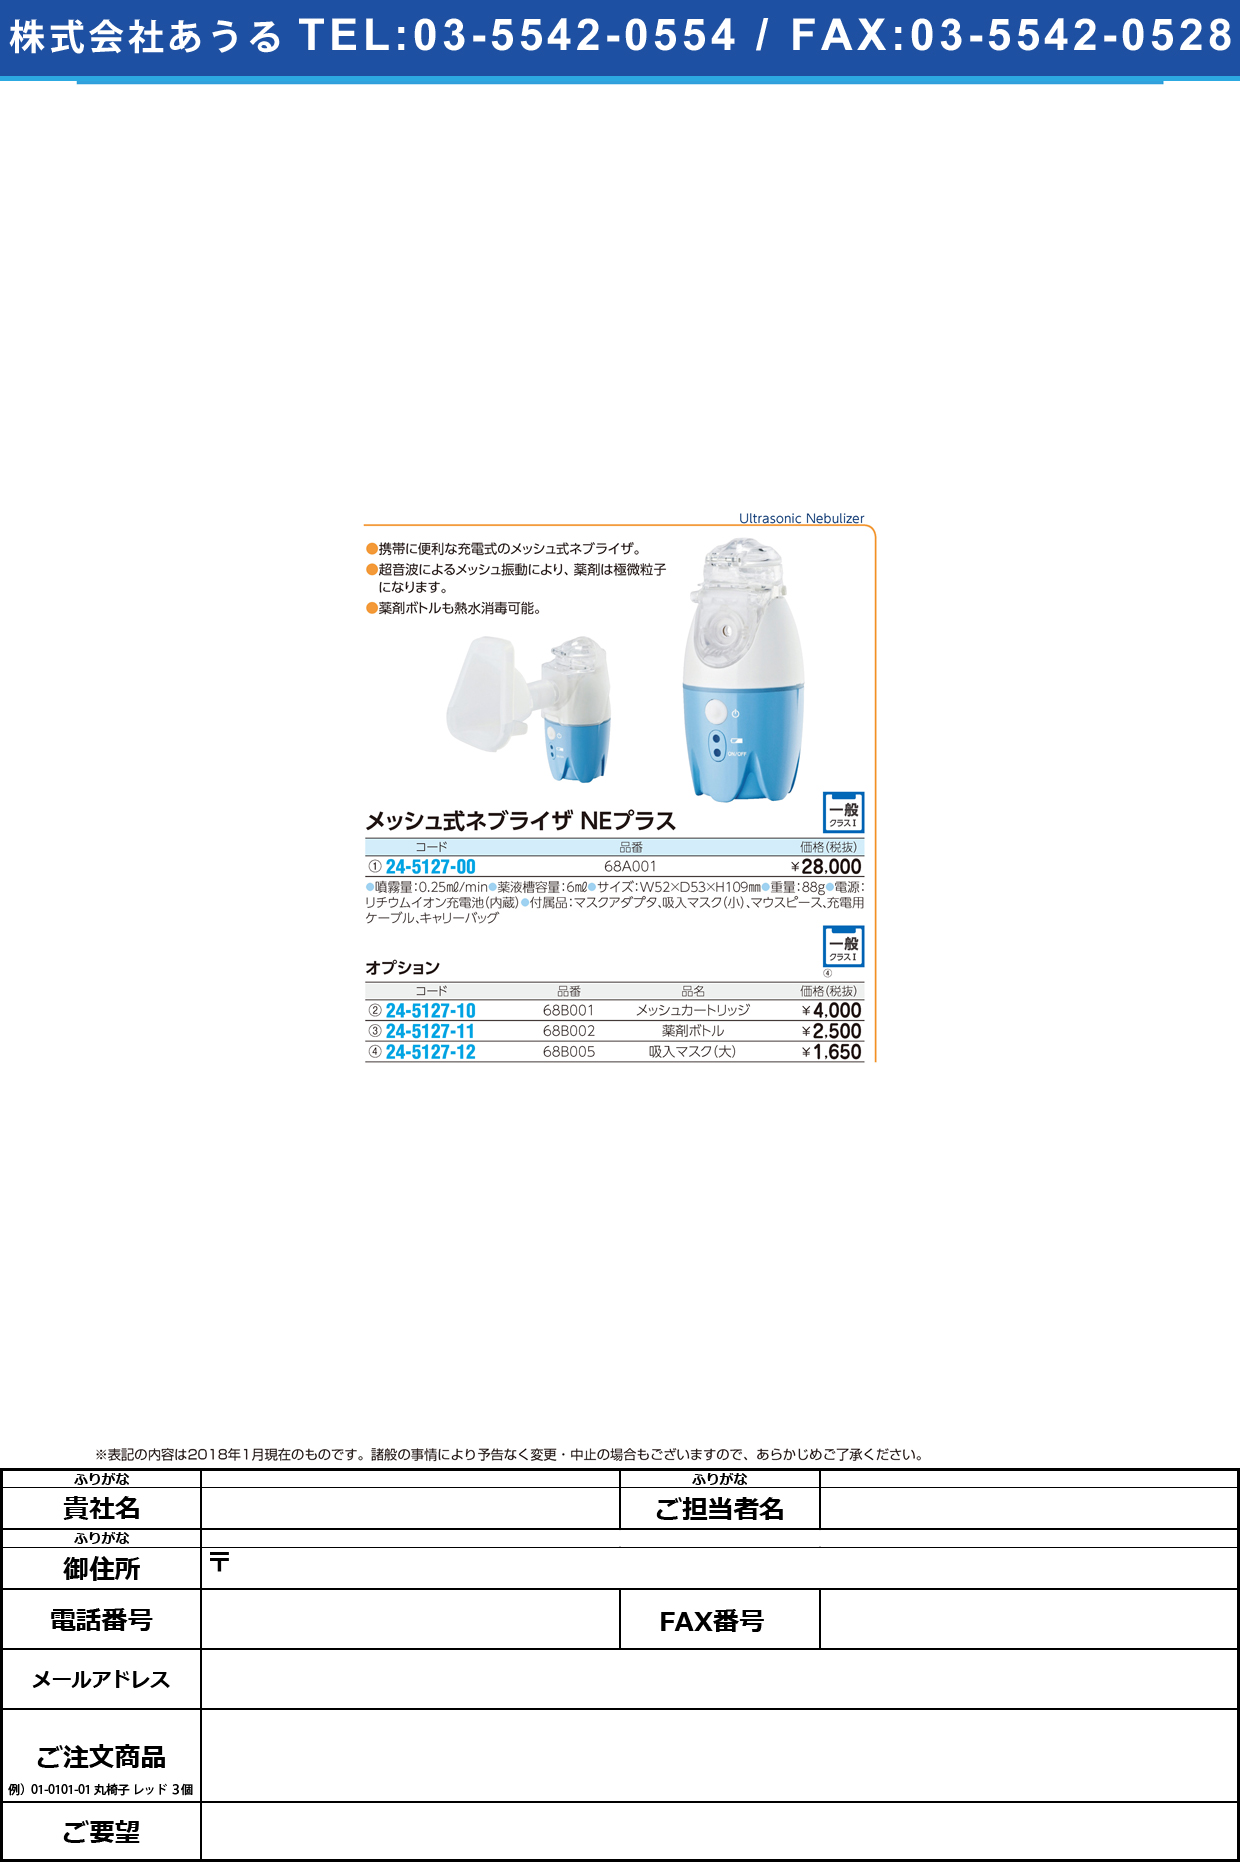 (24-5127-11)薬剤ボトル 68B002 ﾔｸｻﾞｲﾎﾞﾄﾙ【1個単位】【2018年カタログ商品】